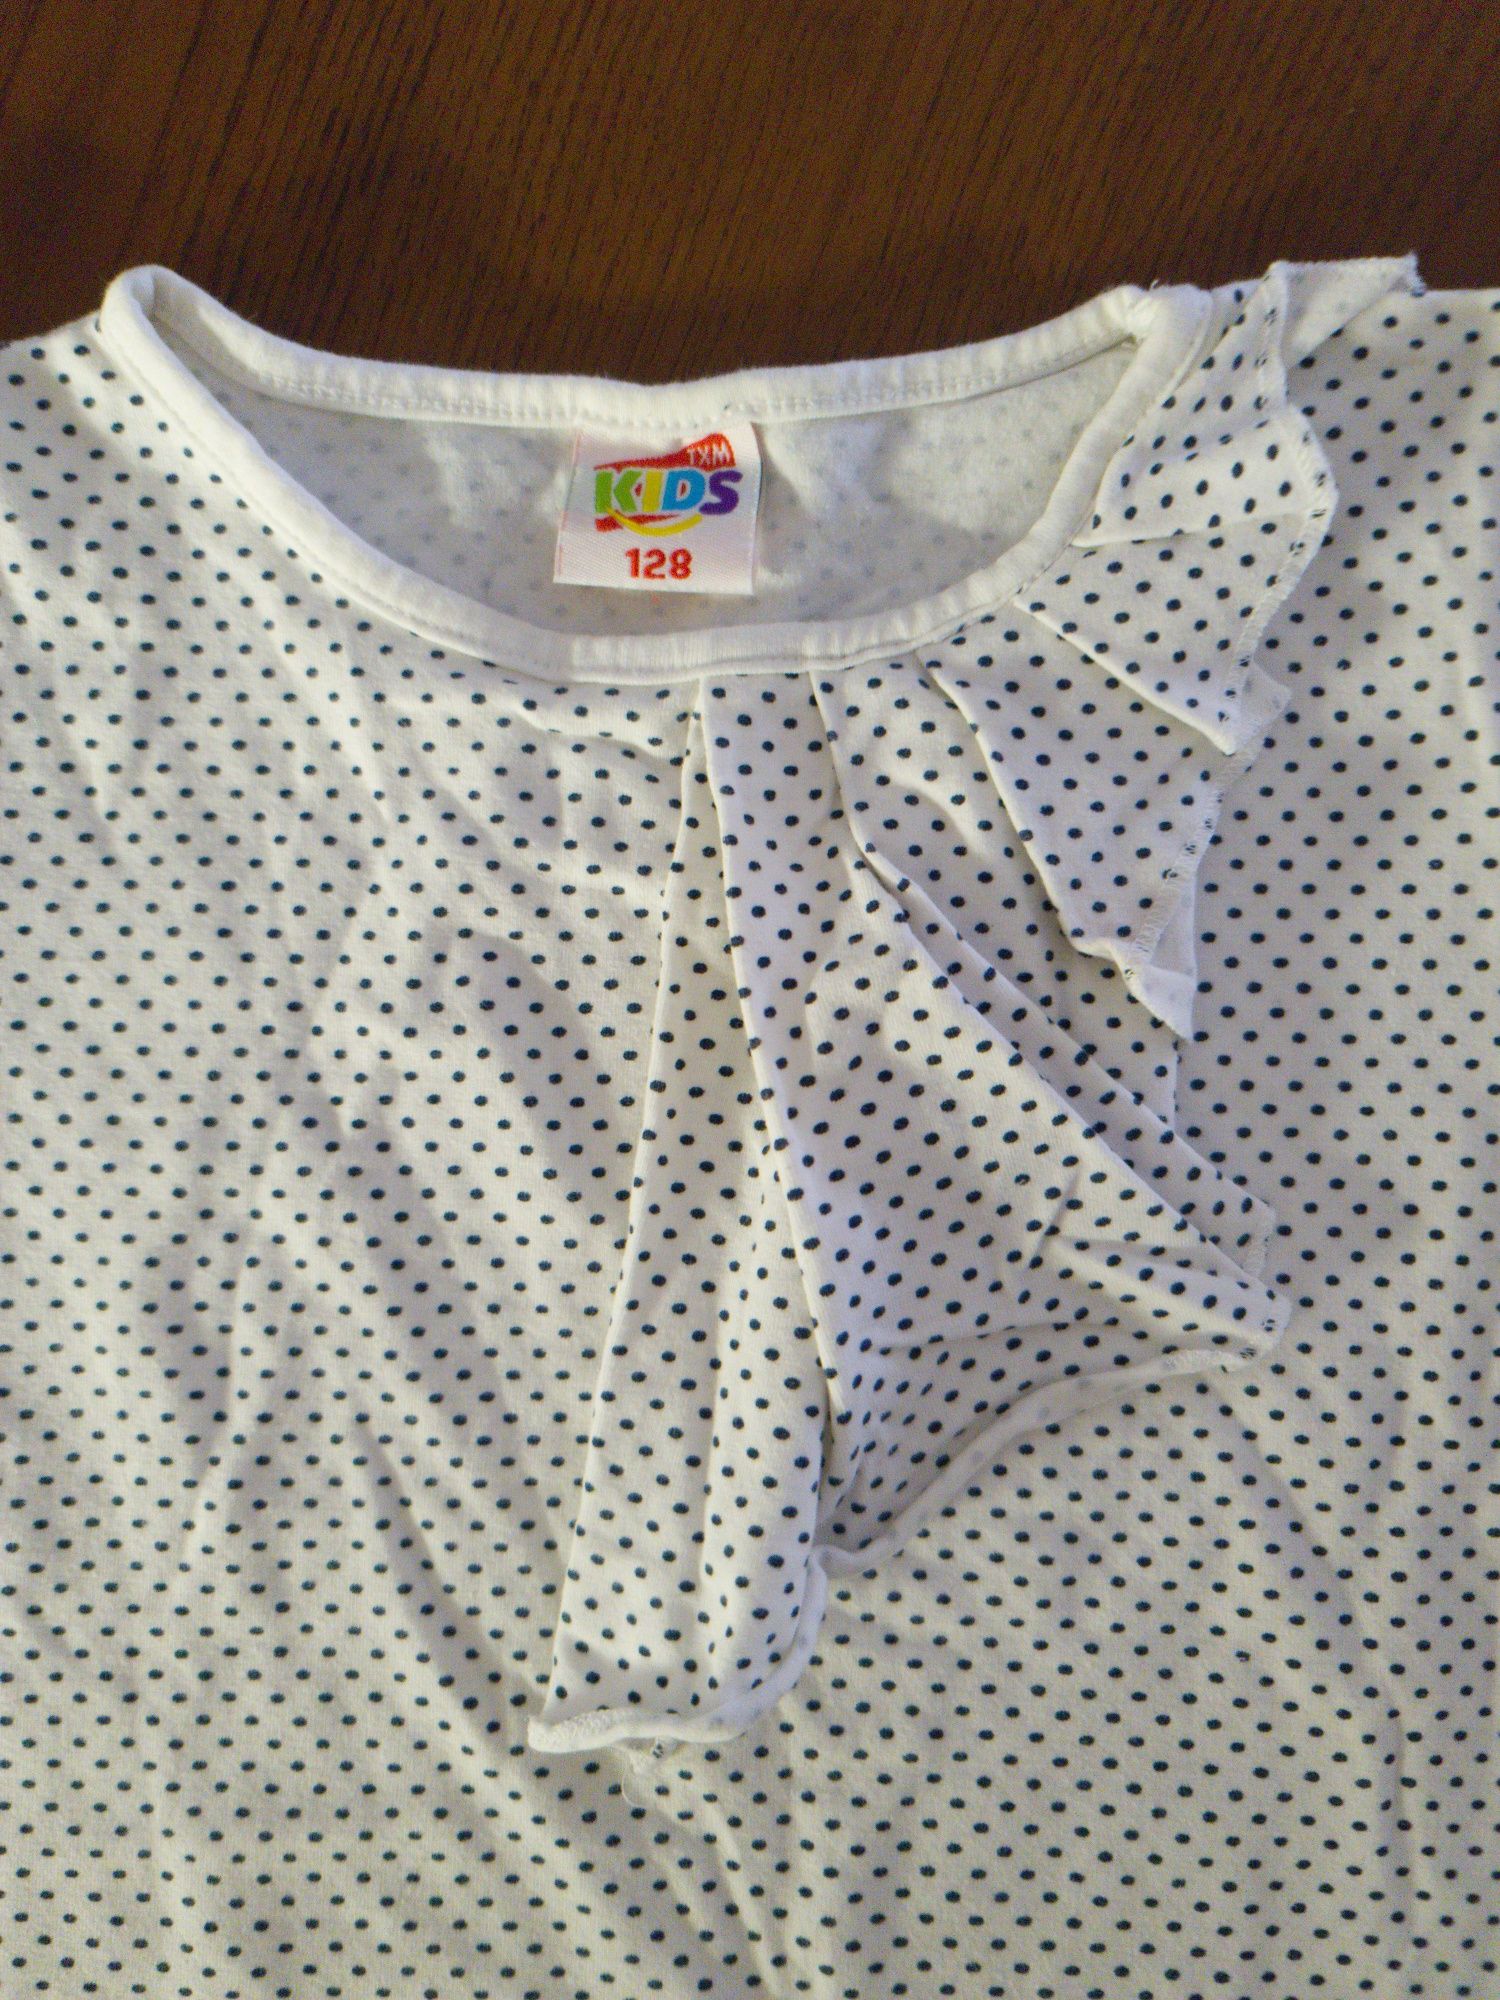 Txm kids bluzeczka 128 koszulka groszki w kropki dla dziewczynki